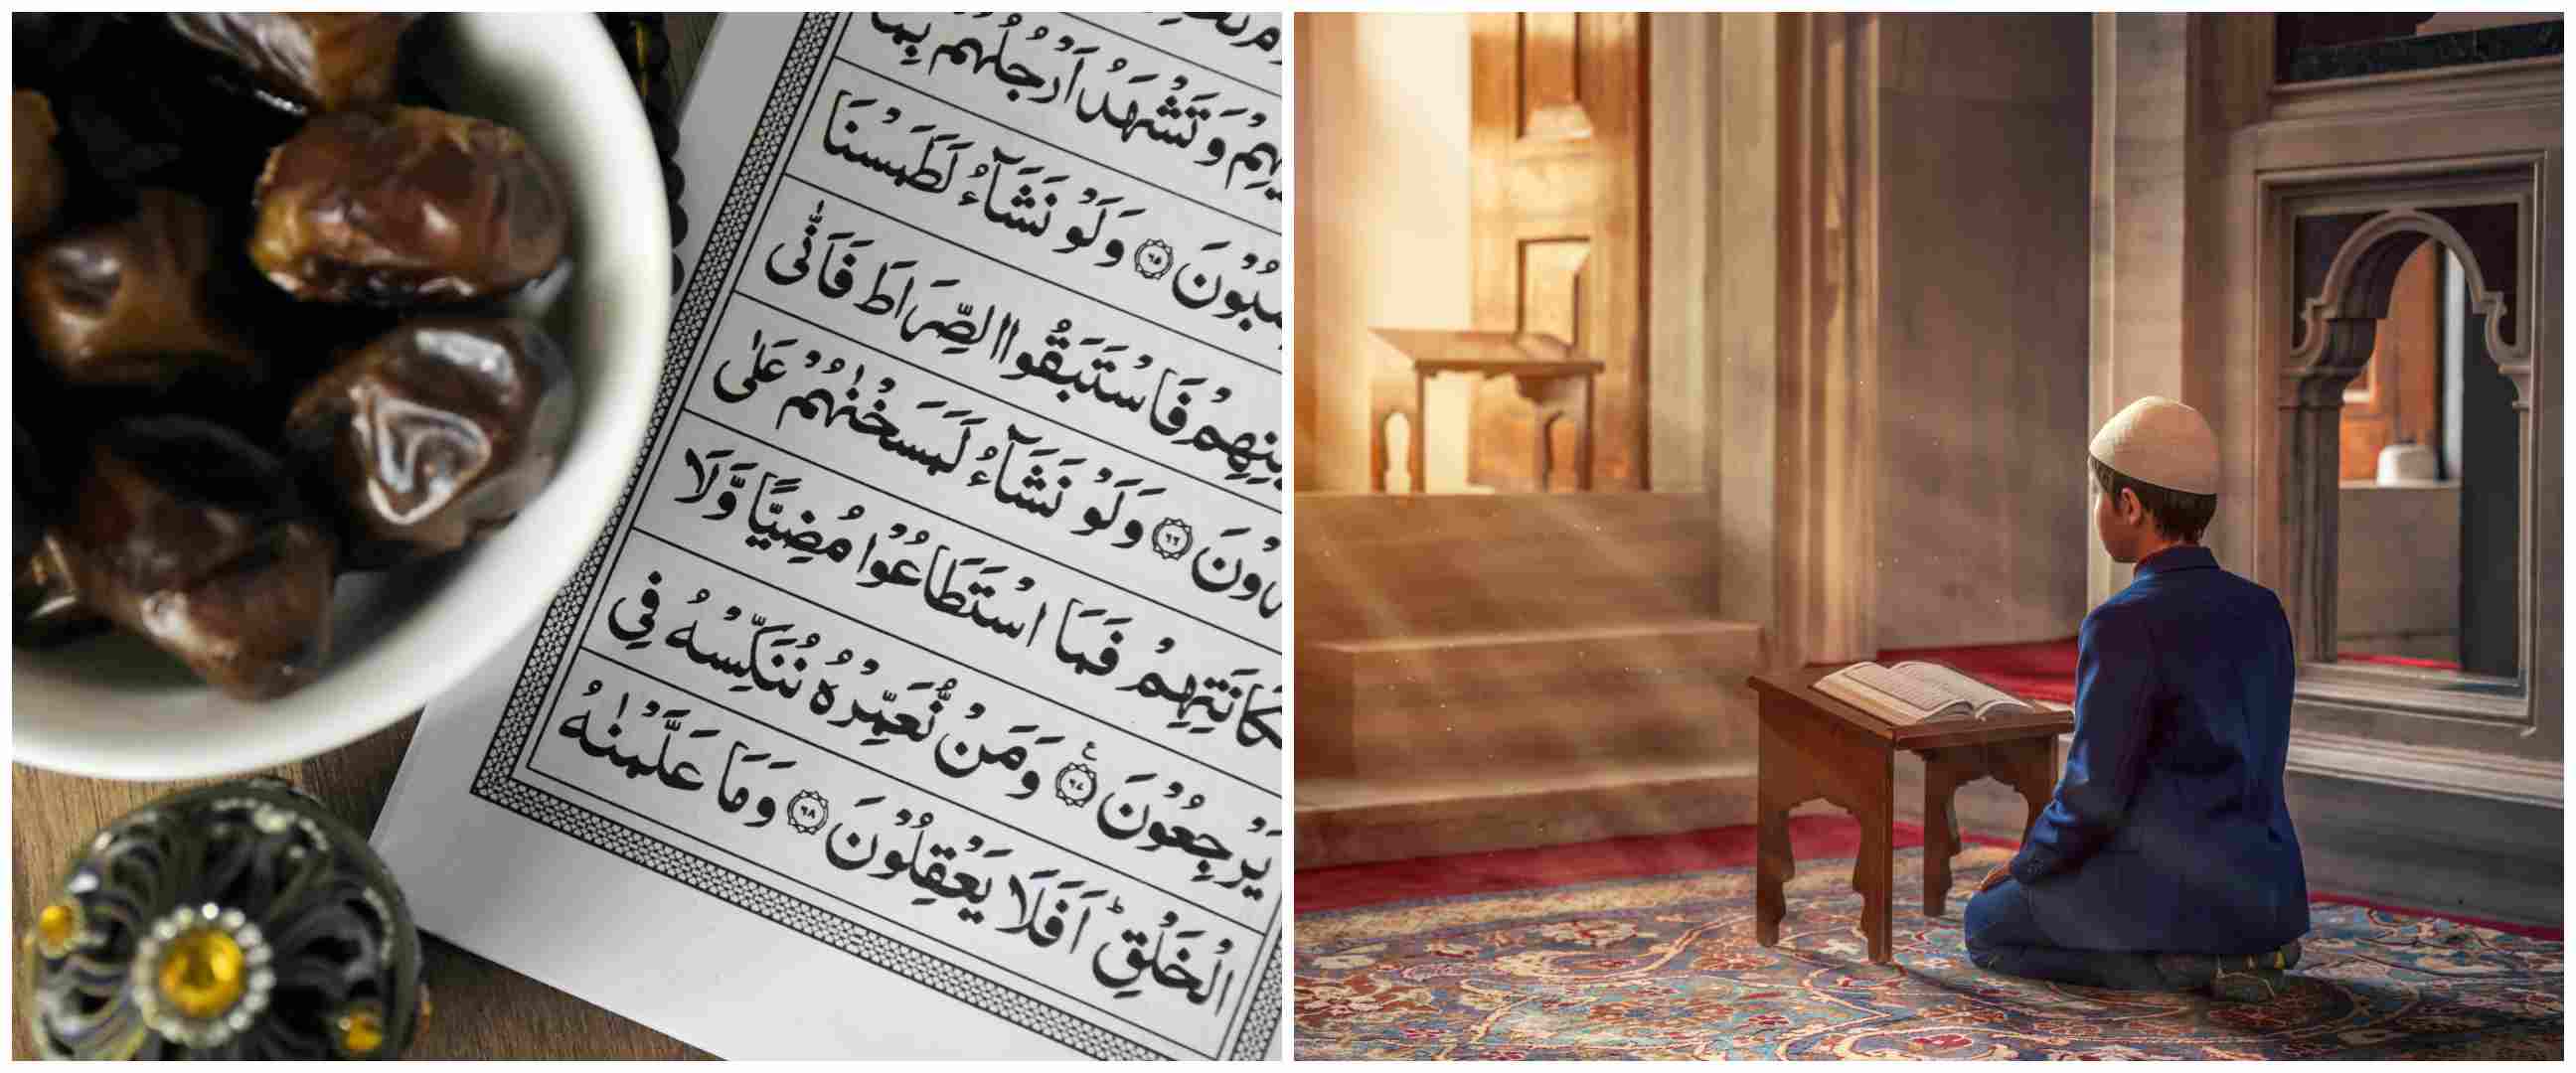 Bacaan surat Al-Fil lengkap dengan Arab, latin, dan terjemahannya